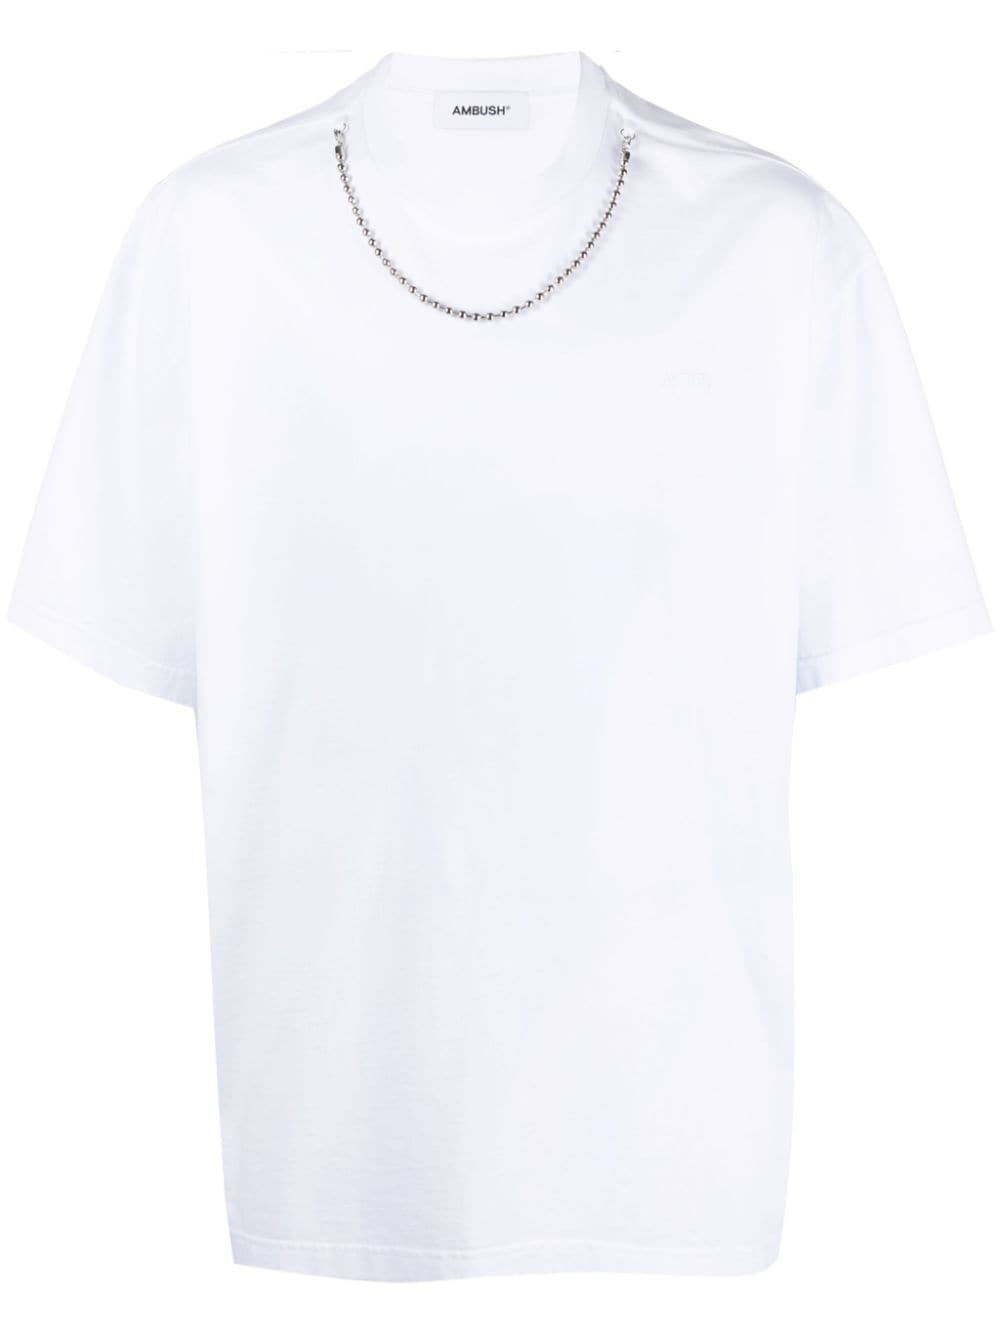 AMBUSH- Chain Cotton T-shirt